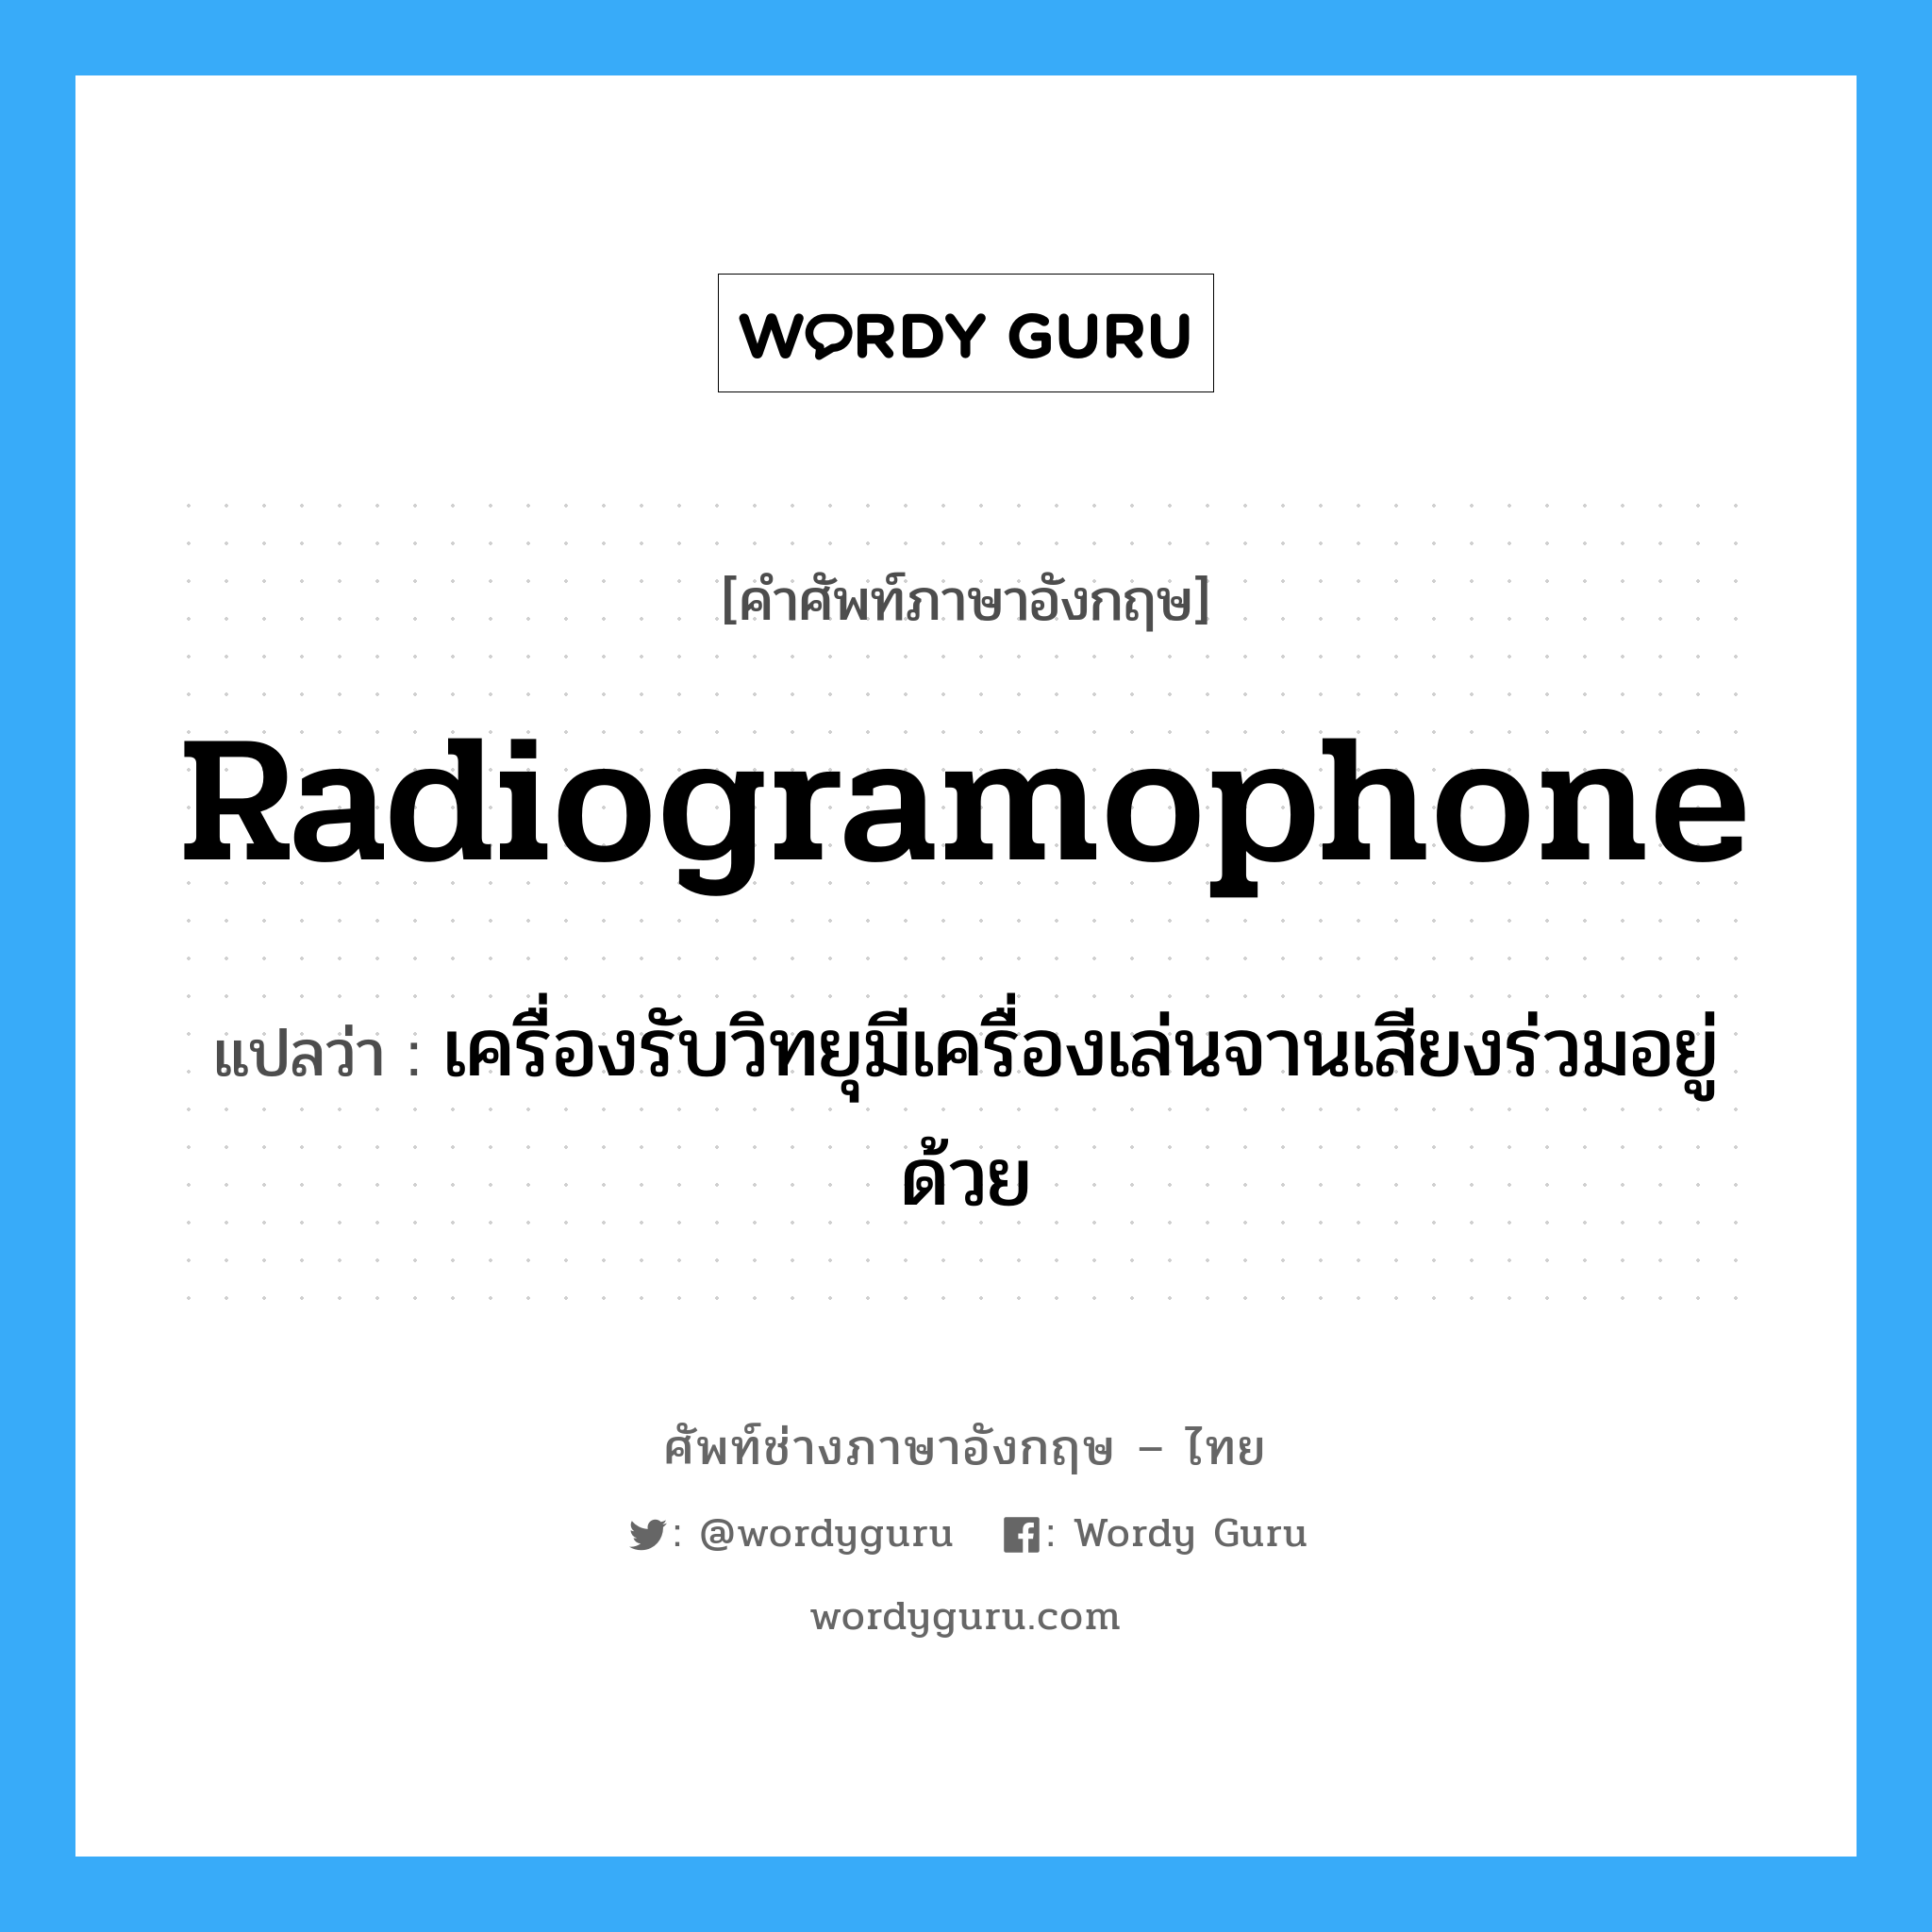 radiogramophone แปลว่า?, คำศัพท์ช่างภาษาอังกฤษ - ไทย radiogramophone คำศัพท์ภาษาอังกฤษ radiogramophone แปลว่า เครื่องรับวิทยุมีเครื่องเล่นจานเสียงร่วมอยู่ด้วย